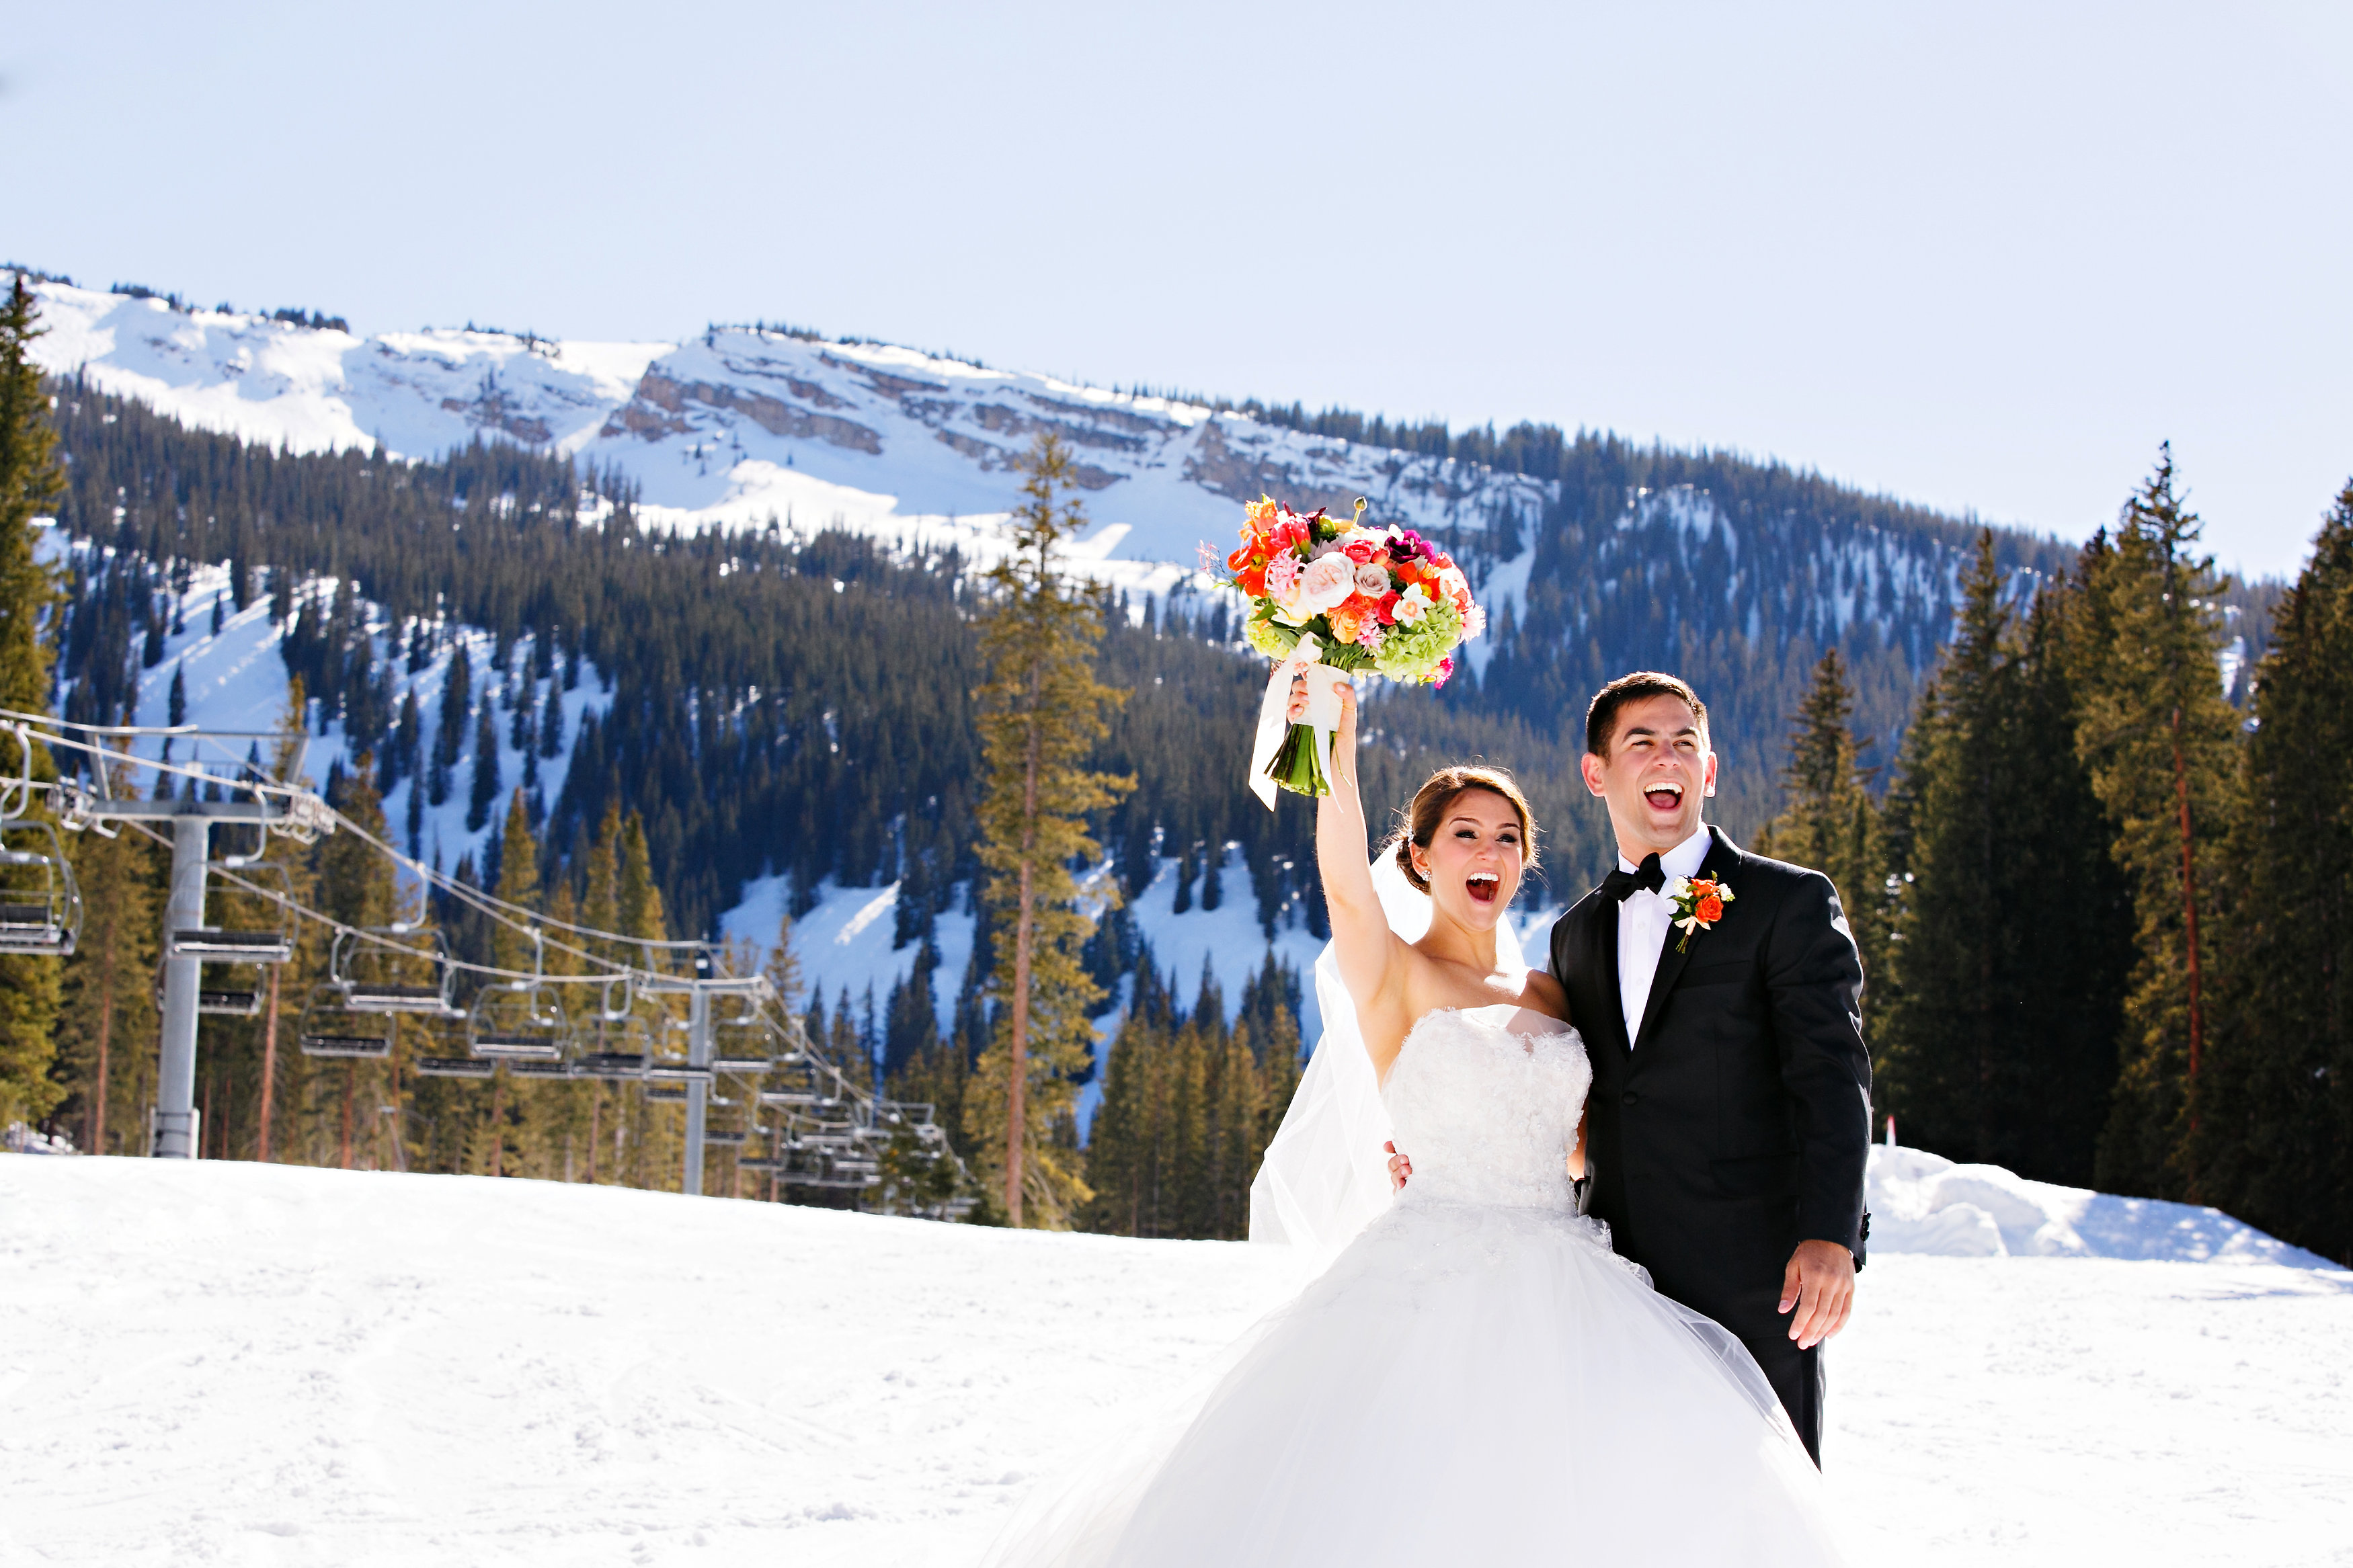 weddings in colorado mountains